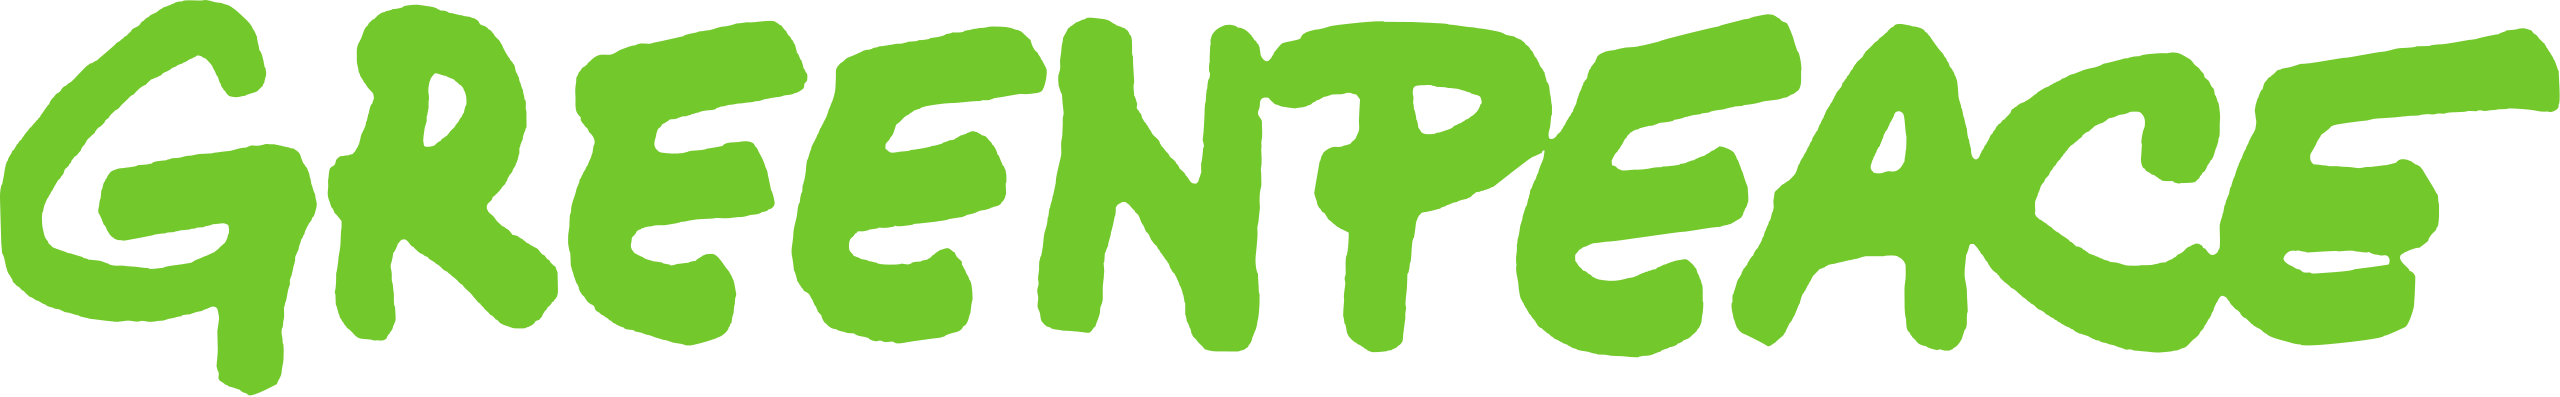 Greenpeace_logo.svg